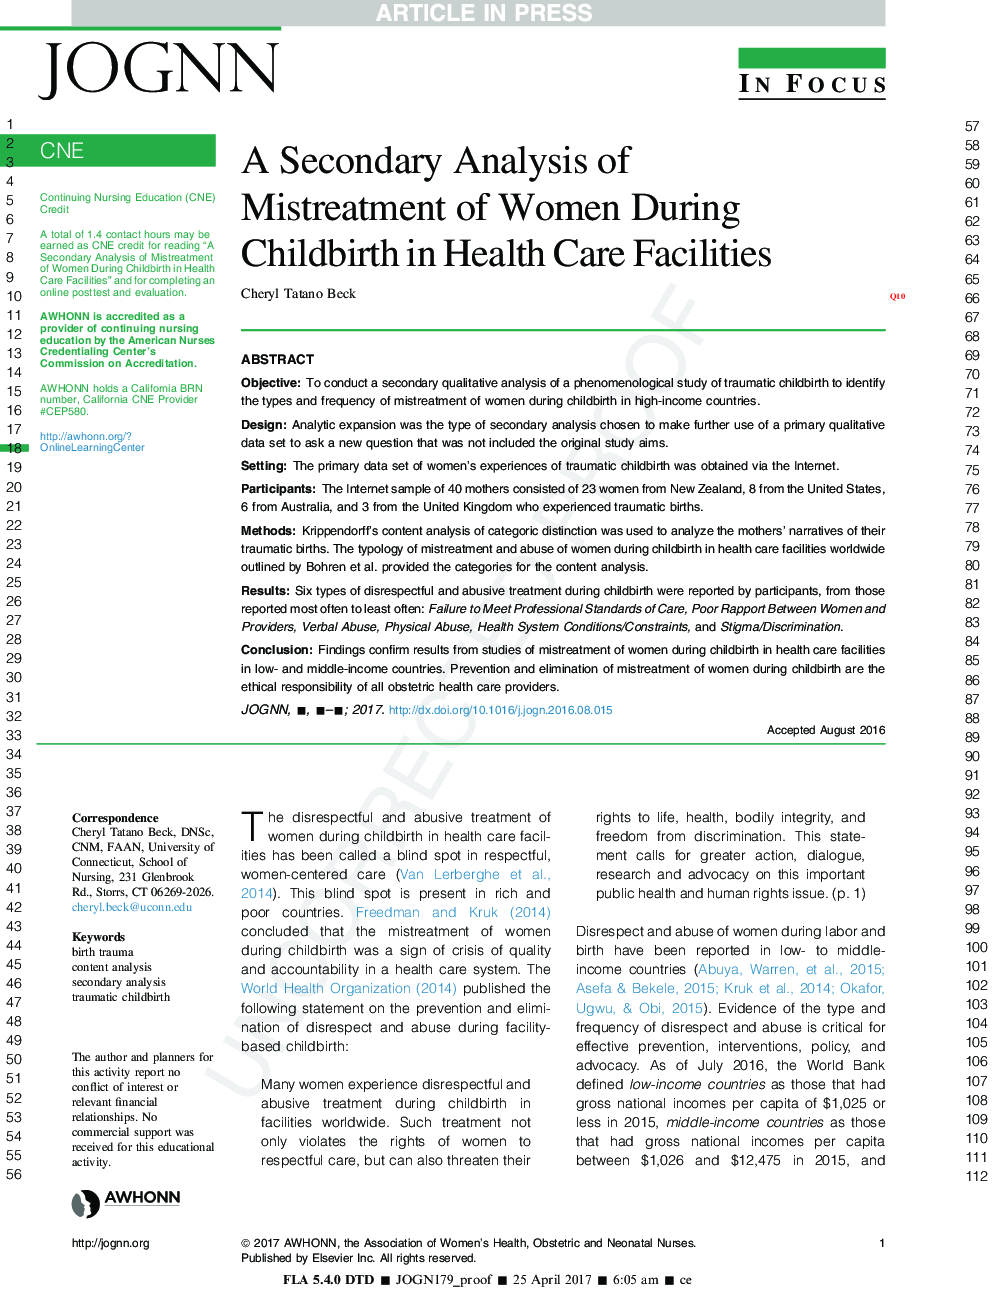 تحلیل ثانوی بدرفتاری زنان در دوران زایمان در مراکز بهداشتی 